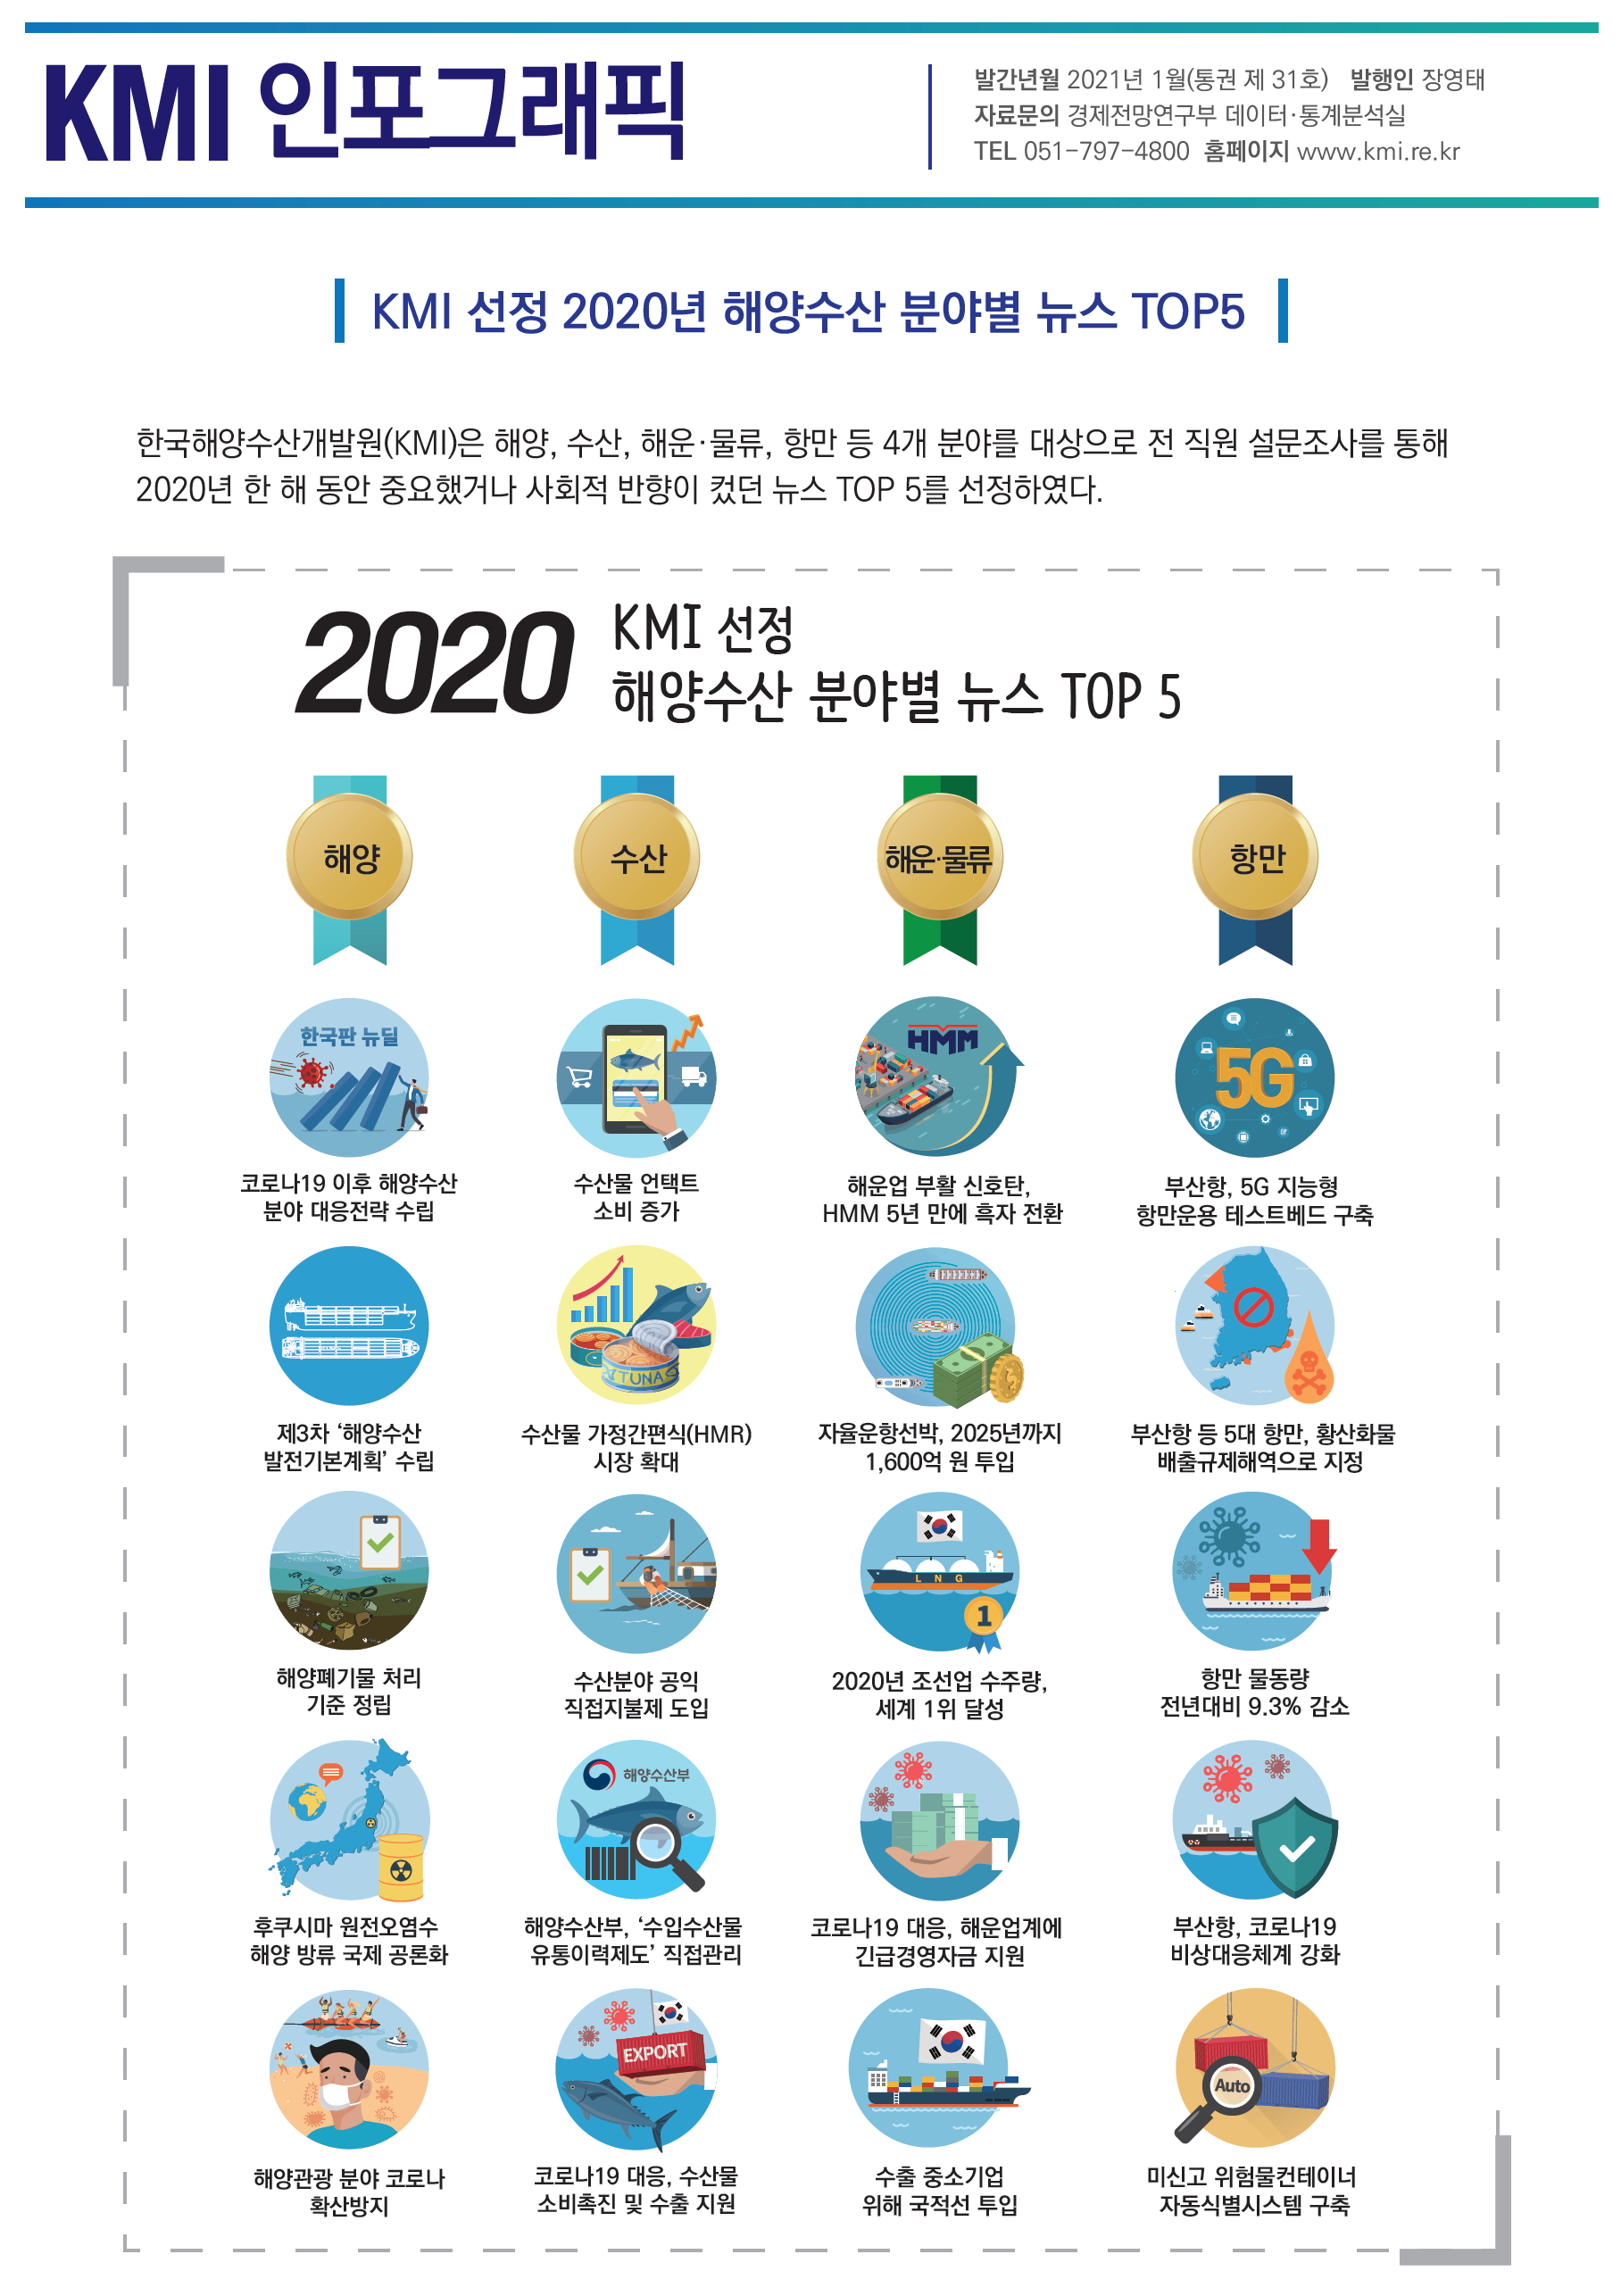 통권 제31호(KMI 선정 2020년 해양수산 분야별 뉴스 TOP5) 표지